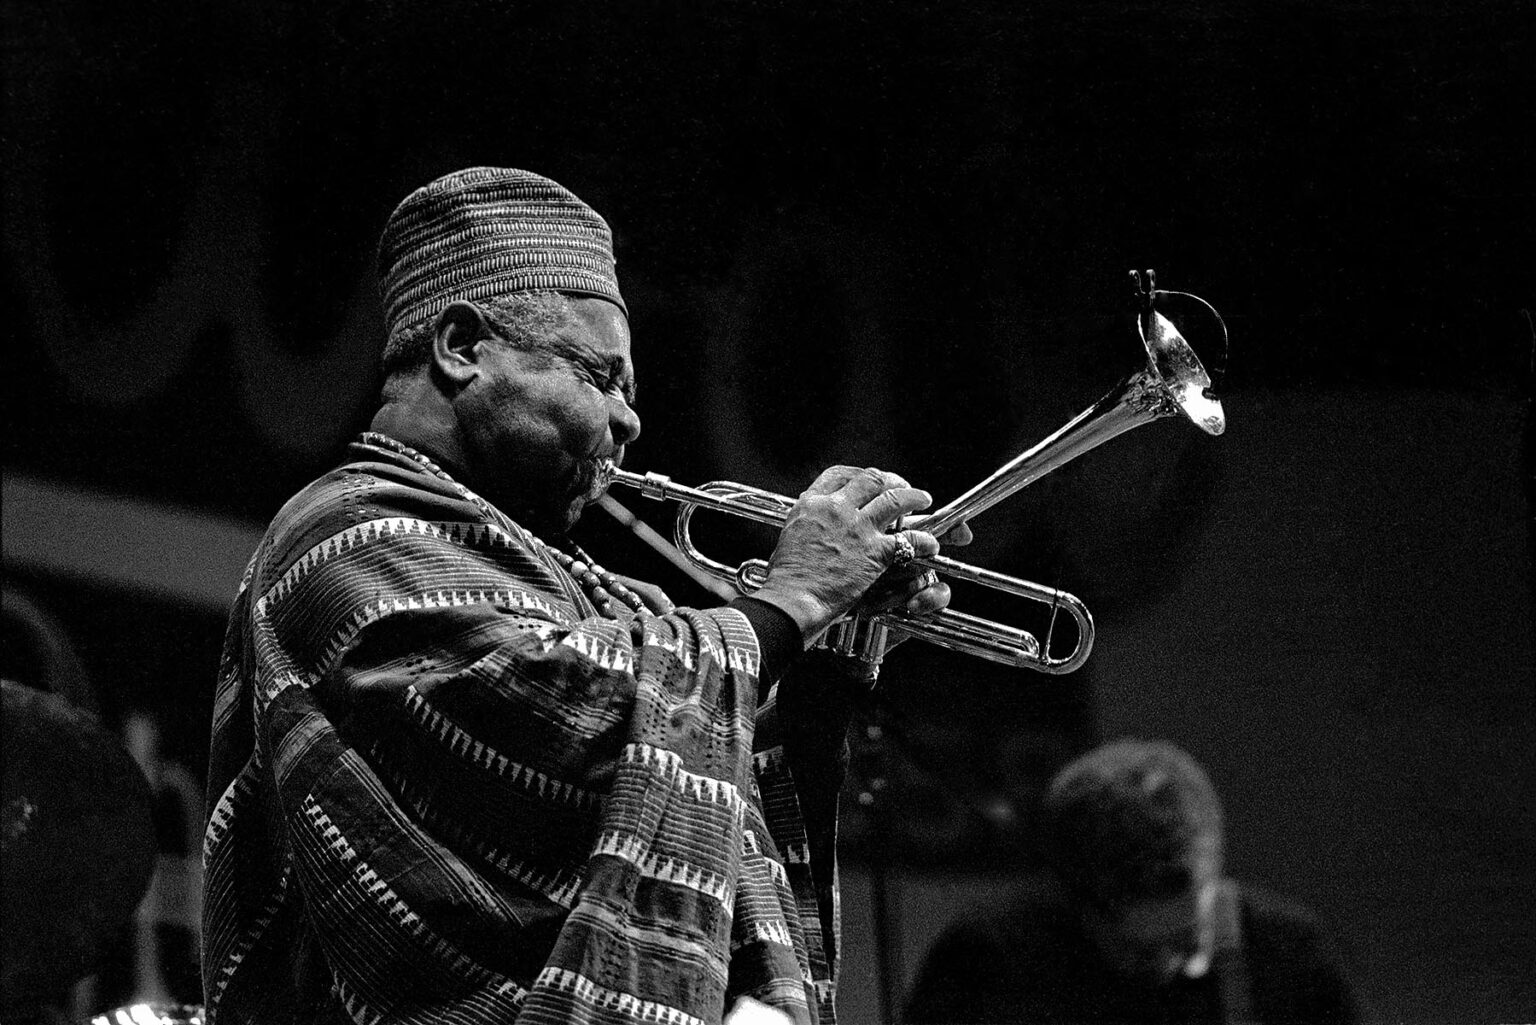 DIZZY GELESPIE plays his trumpet at the MONTEREY JAZZ FESTIVAL in 1984 - MONTEREY, CALIFORNIA